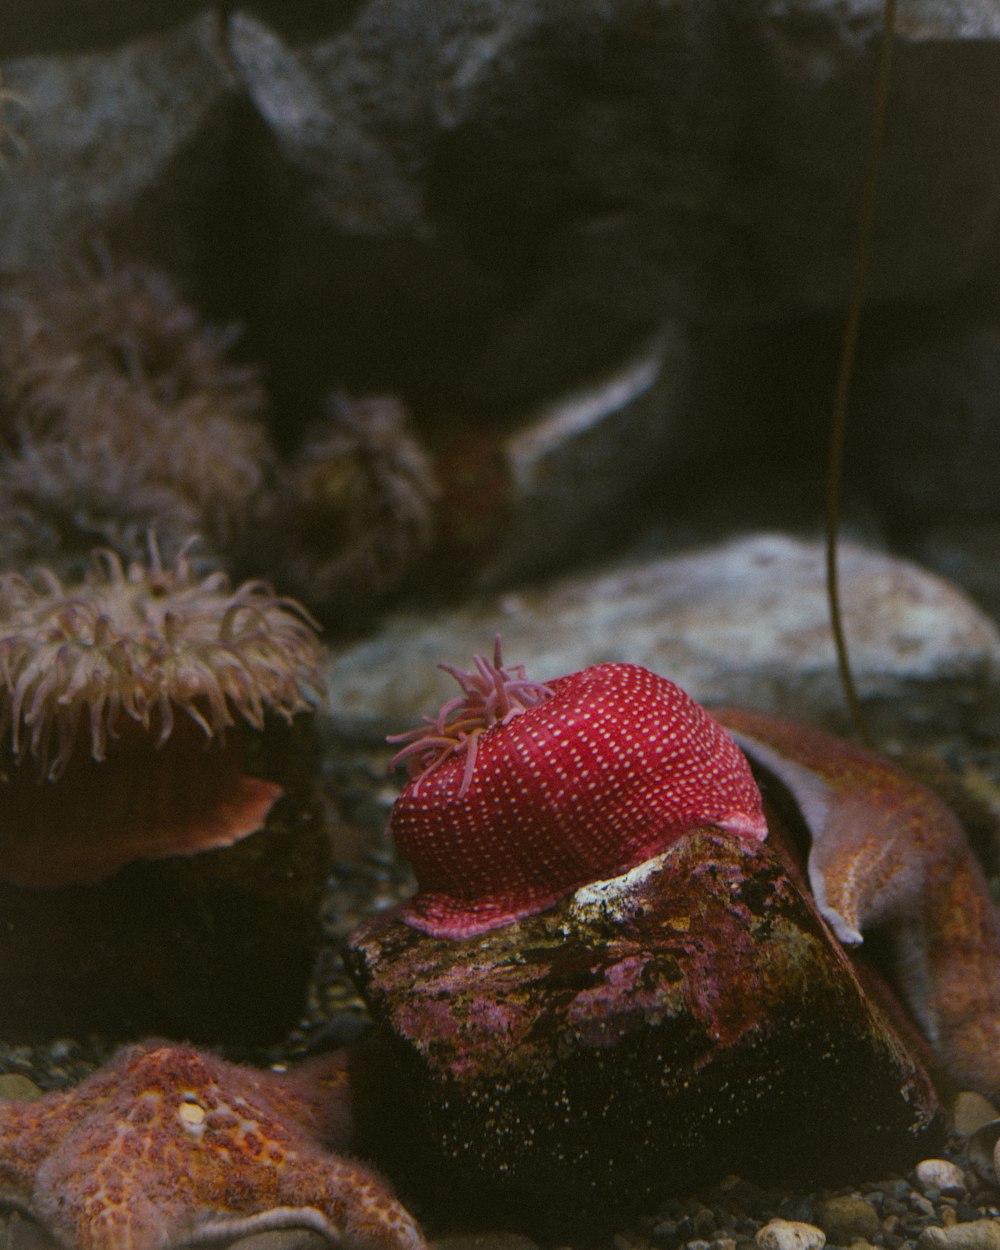 Pesci rossi e bianchi nell'acquario